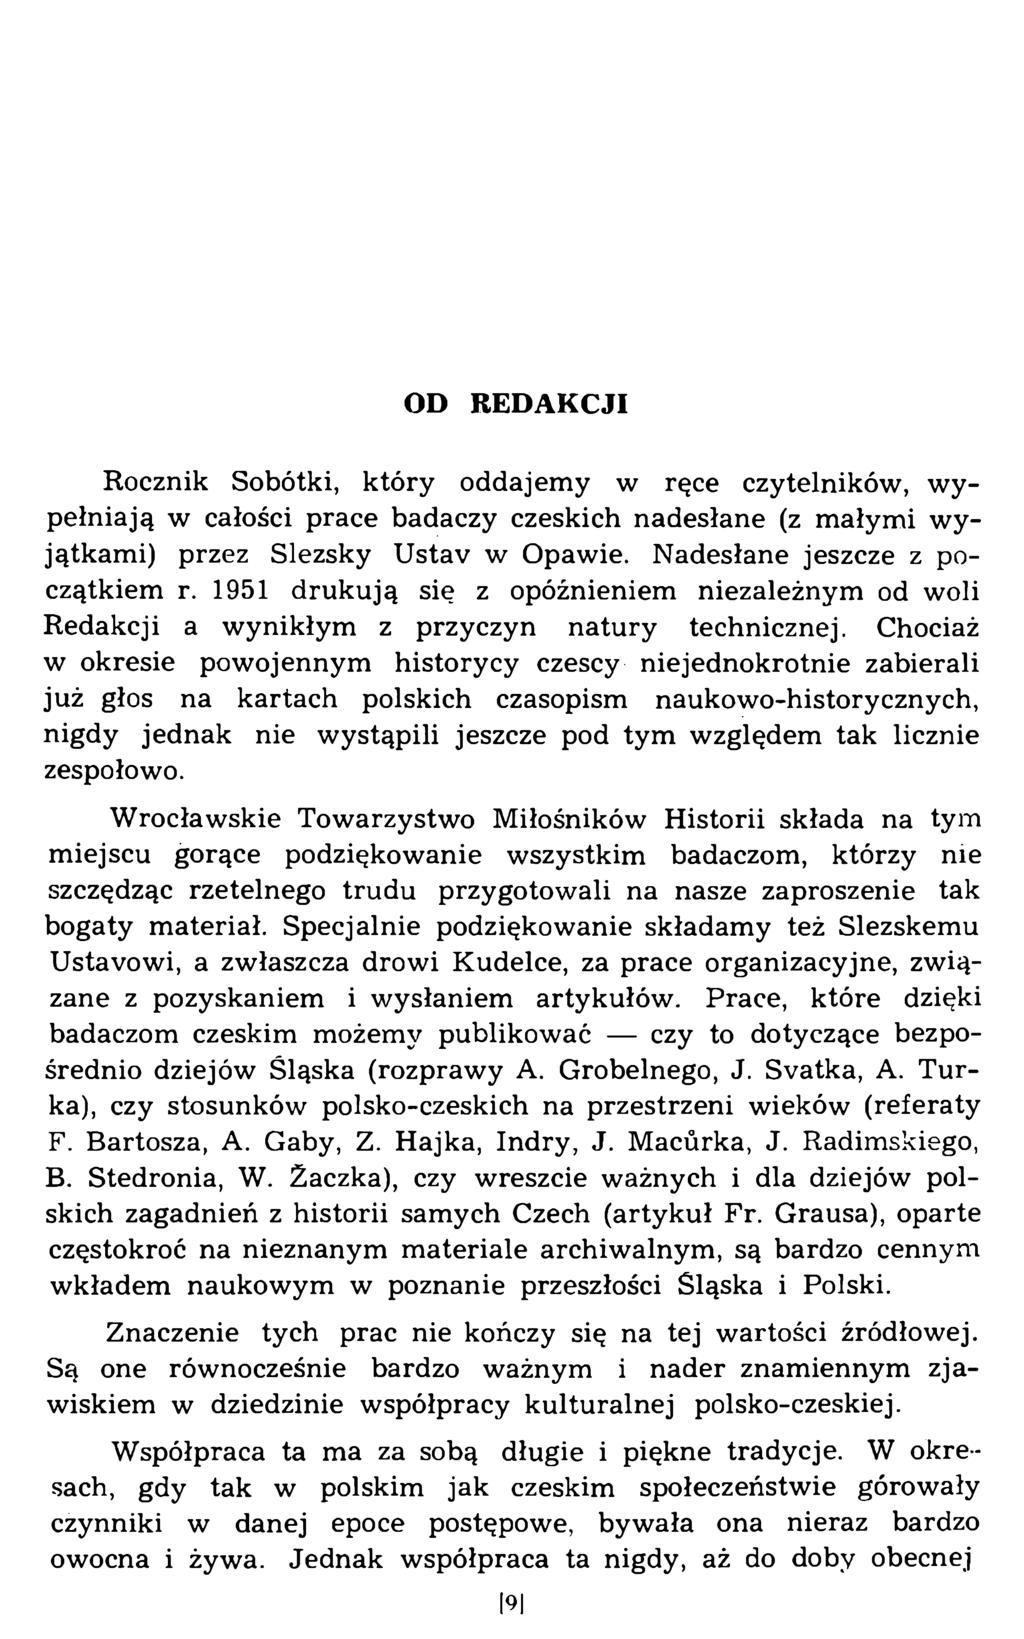 OD REDAKCJI Rocznik Sobótki, który oddajemy w ręce czytelników, wypełniają w całości prace badaczy czeskich nadesłane (z małymi wyjątkami) przez Slezsky Ustav w Opawie.